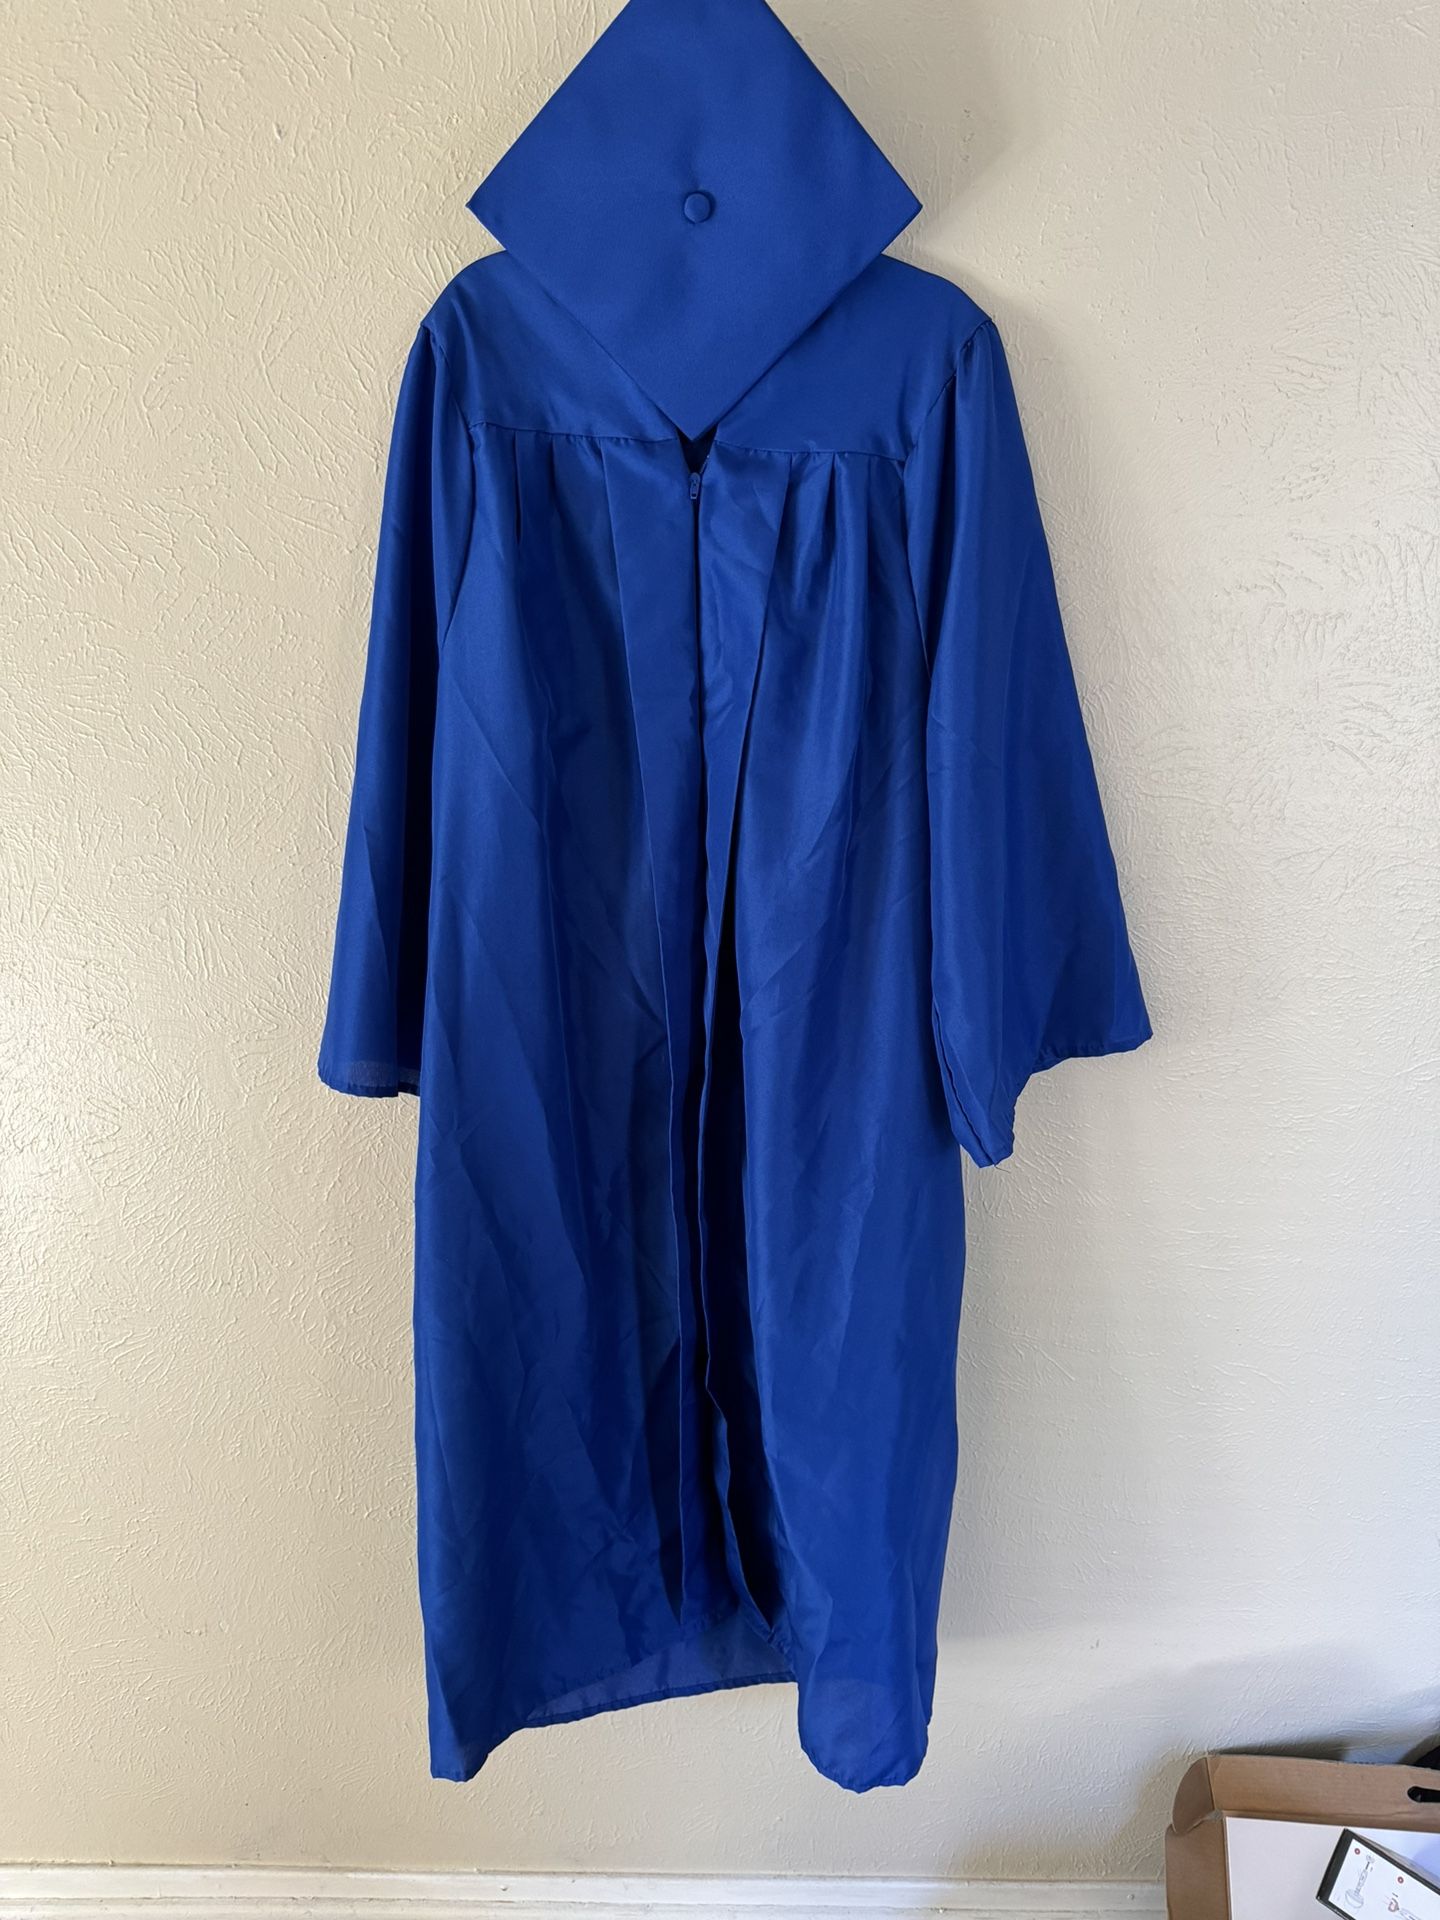 Blue Graduation Gown & Cap 